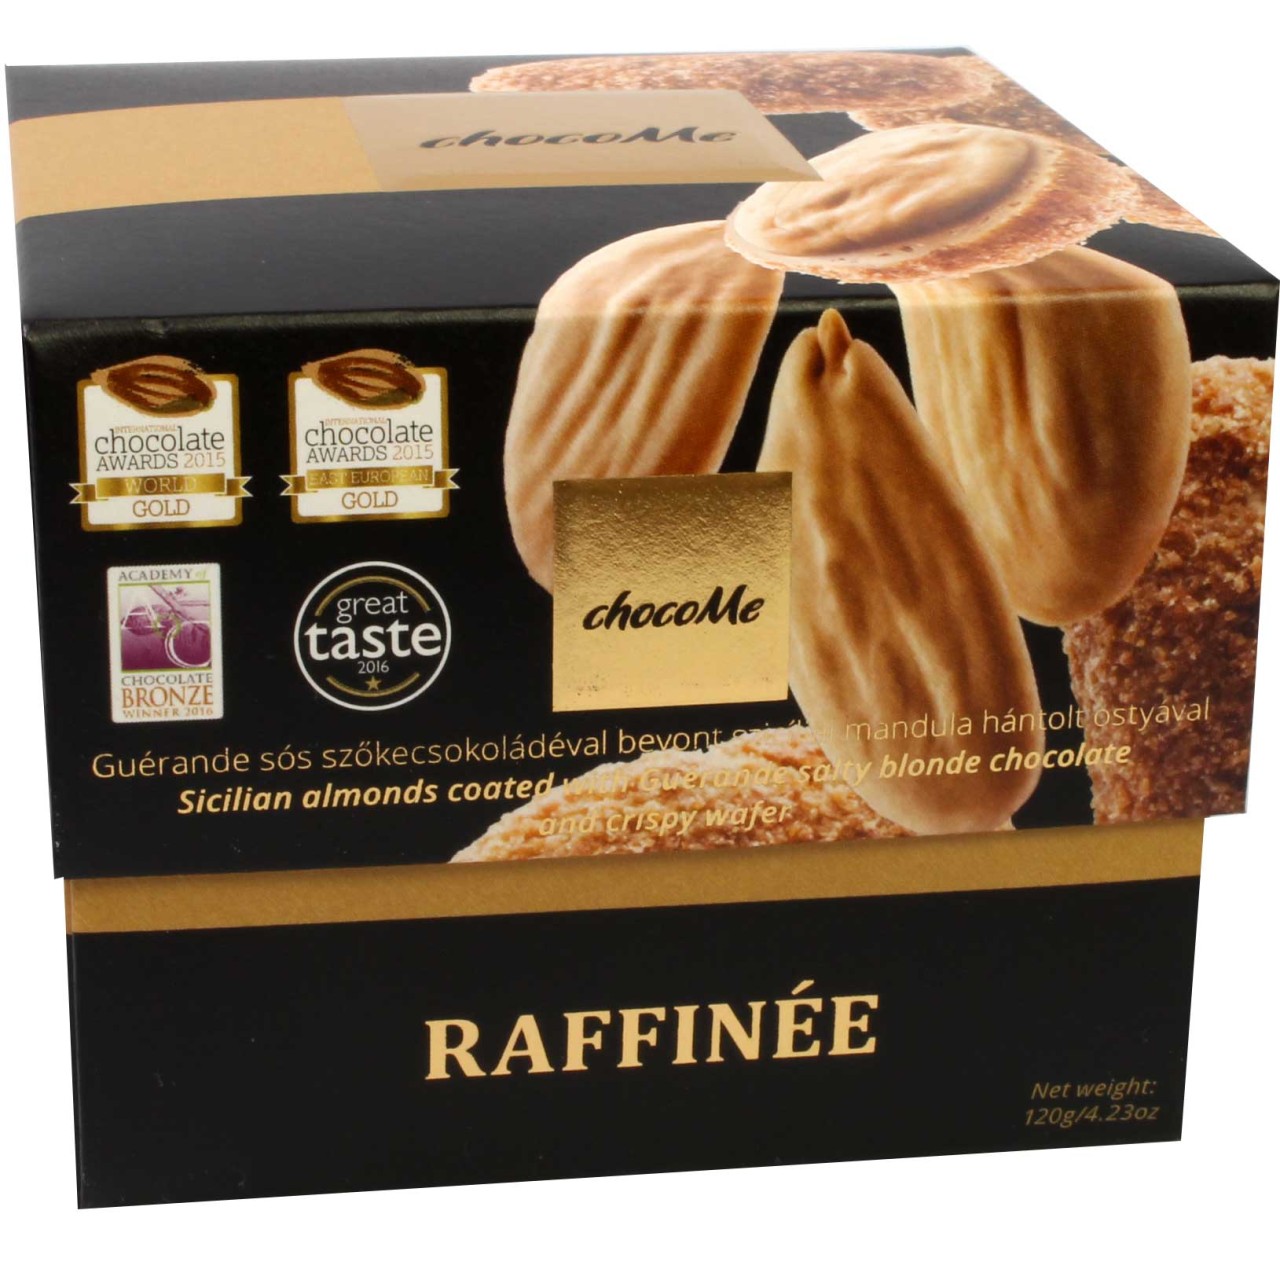 chocoMe Raffinée - Sizilianische Mandeln mit Guérande Salz verfeinerte blonde Schokolade überzogen 1